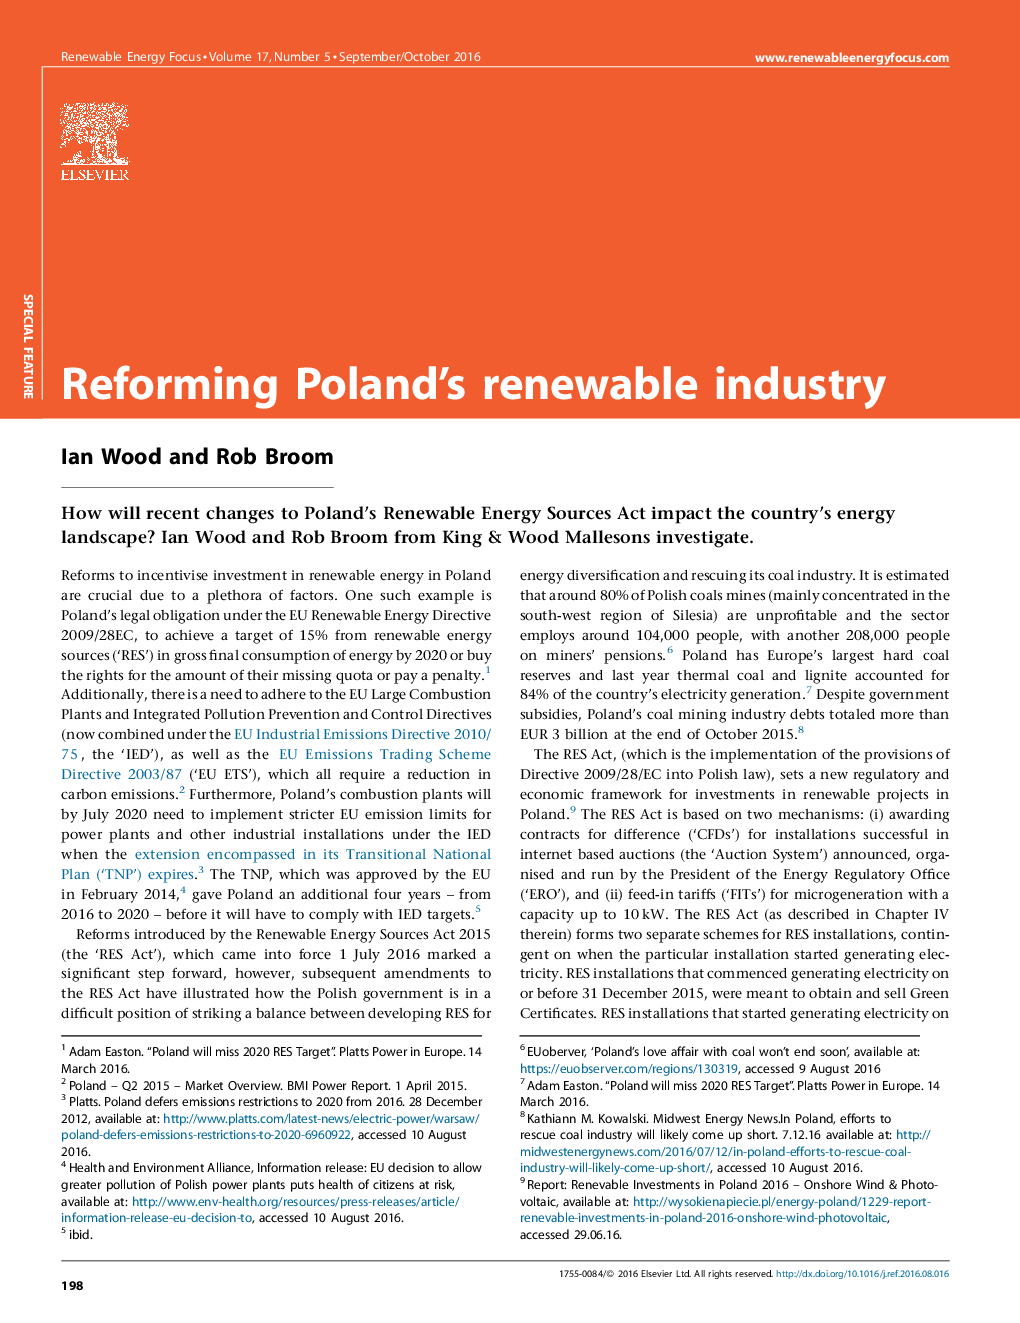 اصلاح صنعت تجدید پذیر لهستان 